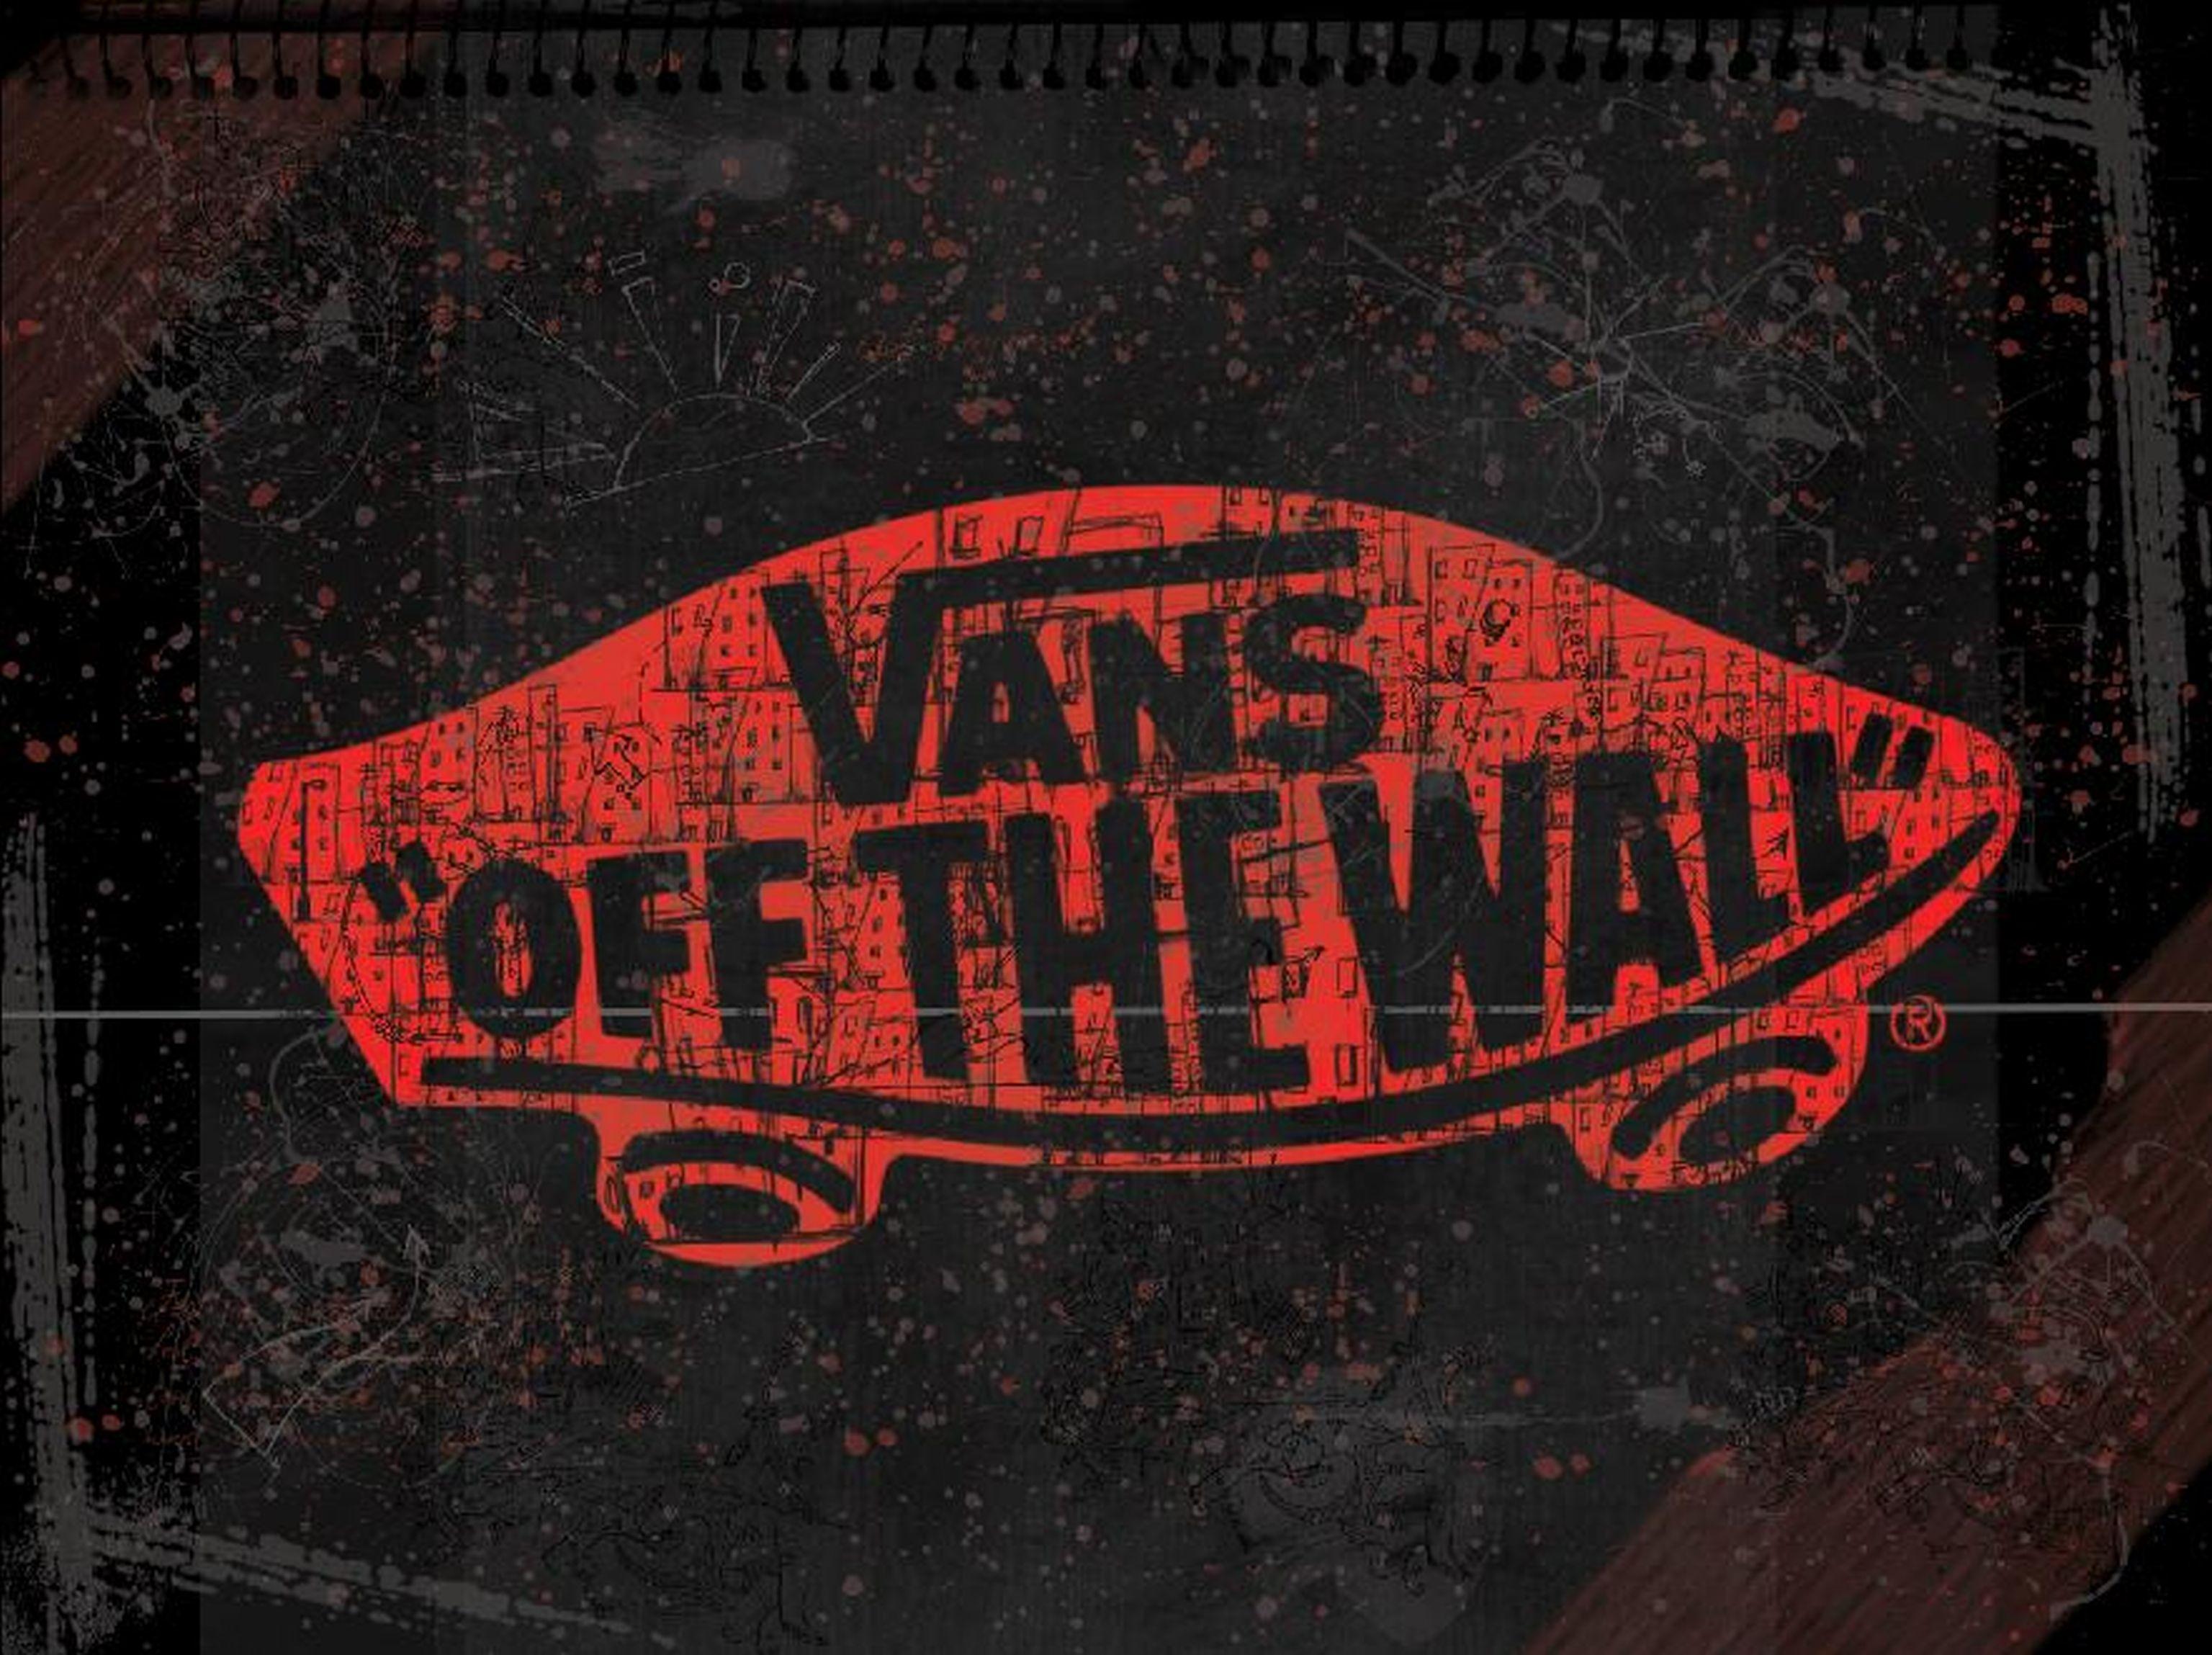 Vans Wallpaper Free Vans Background